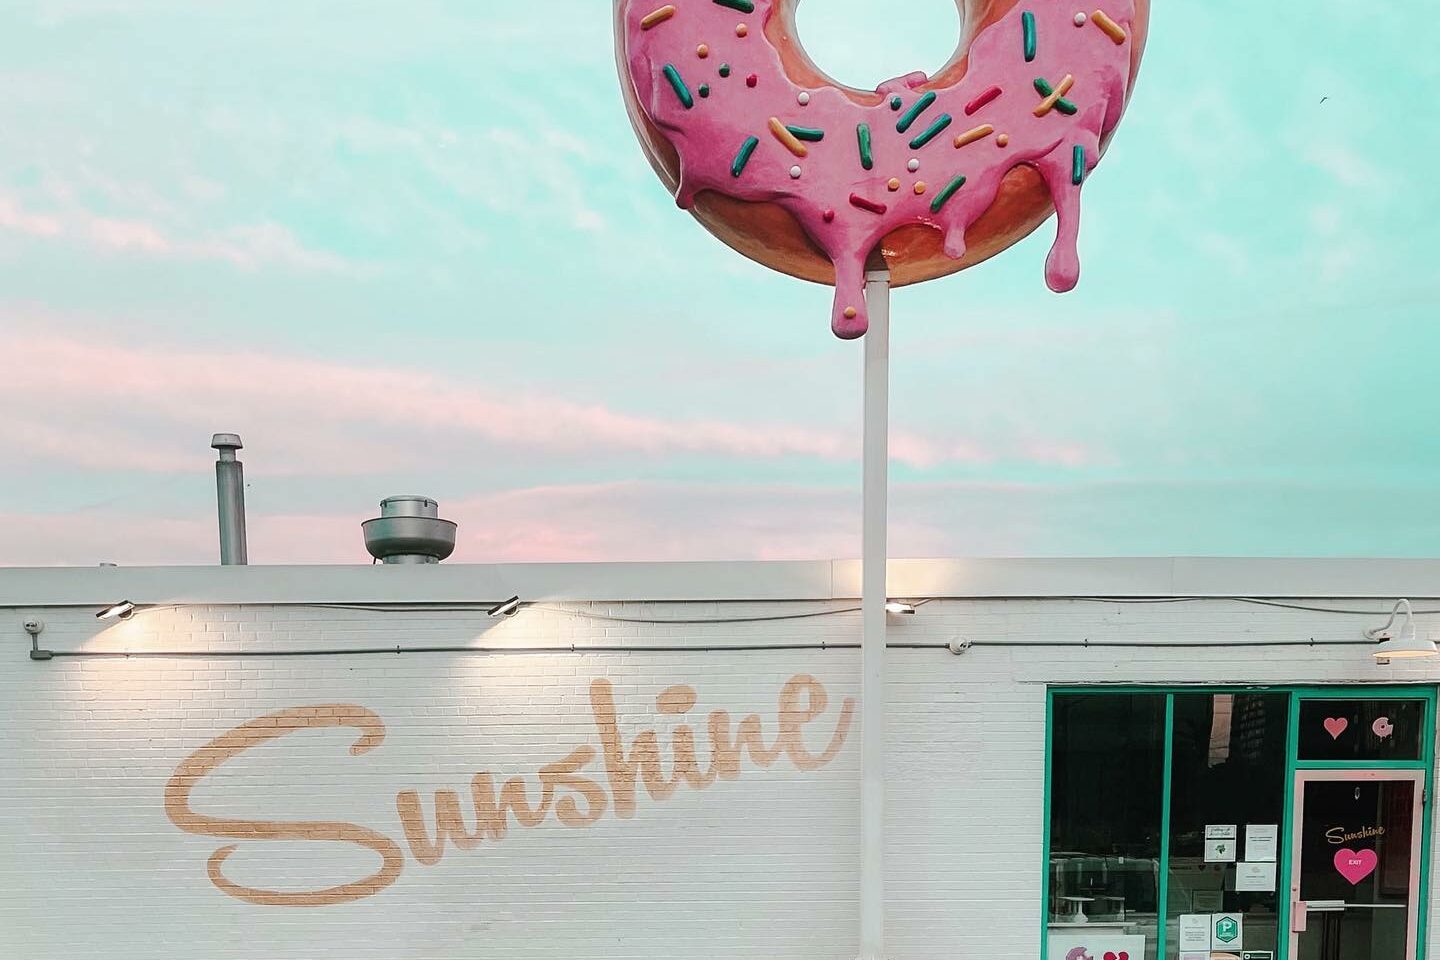 The Sunshine Doughnut Co.